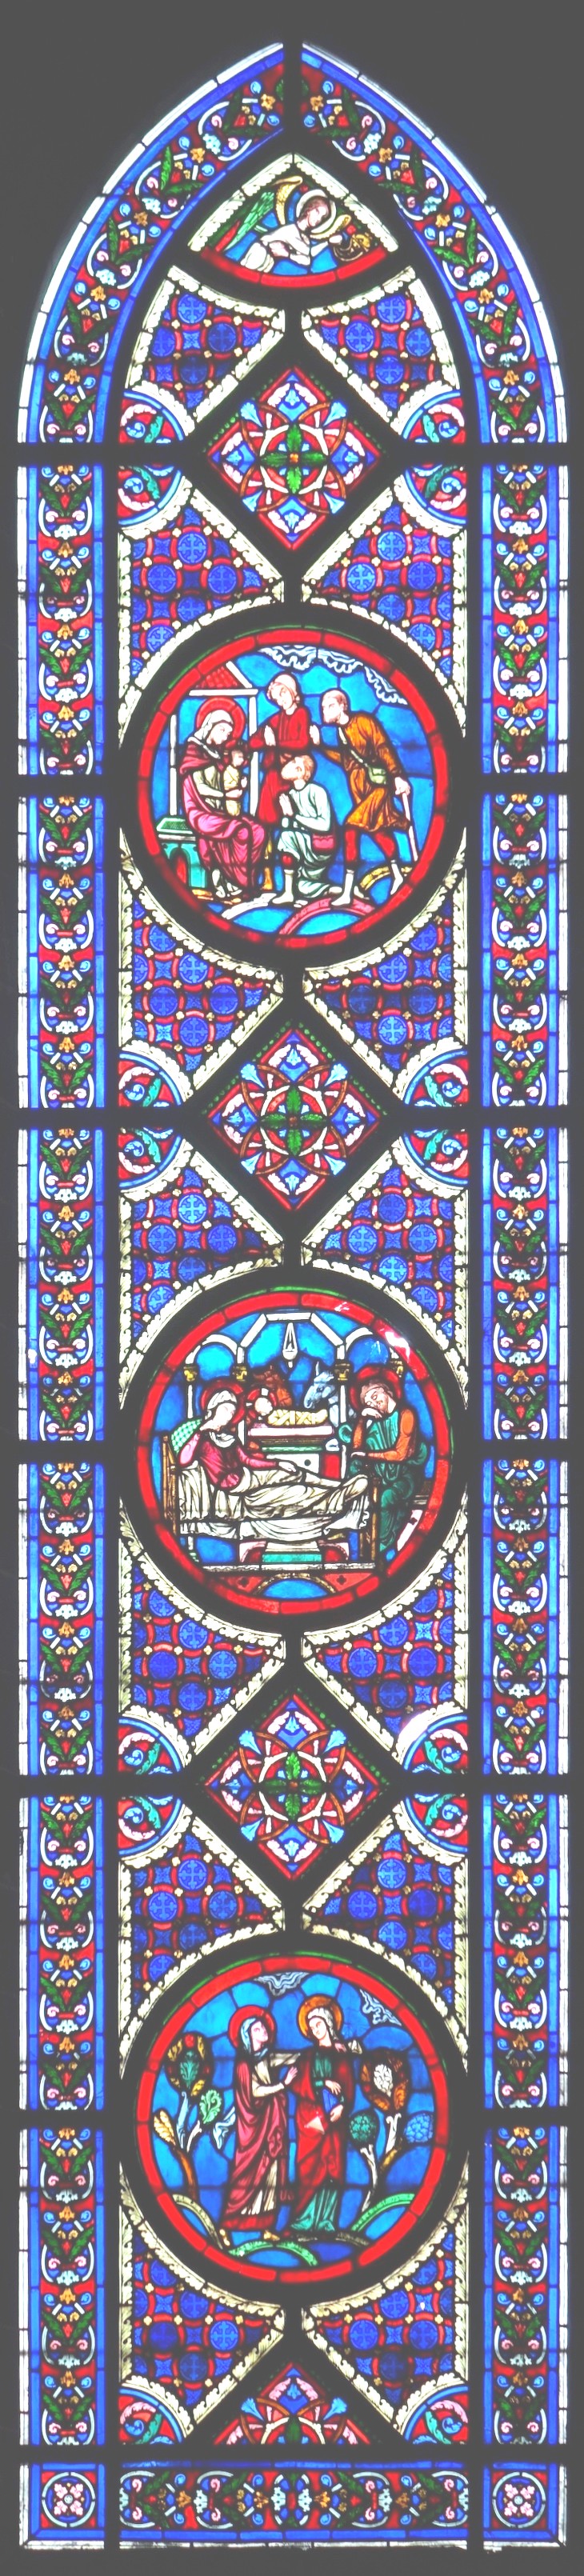 B1 - vitraux de la chapelle épiscopale saint-omer